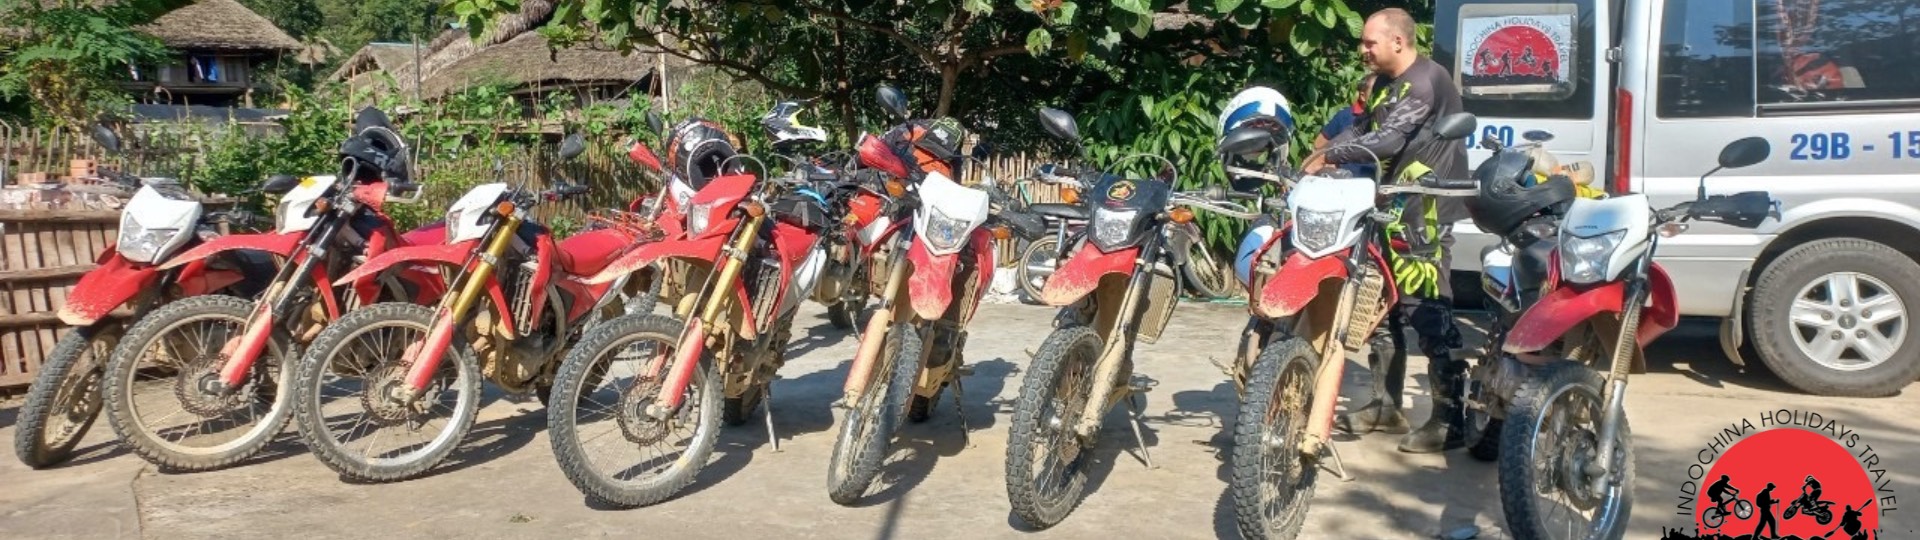 Vietnam Motorbike Tours 6